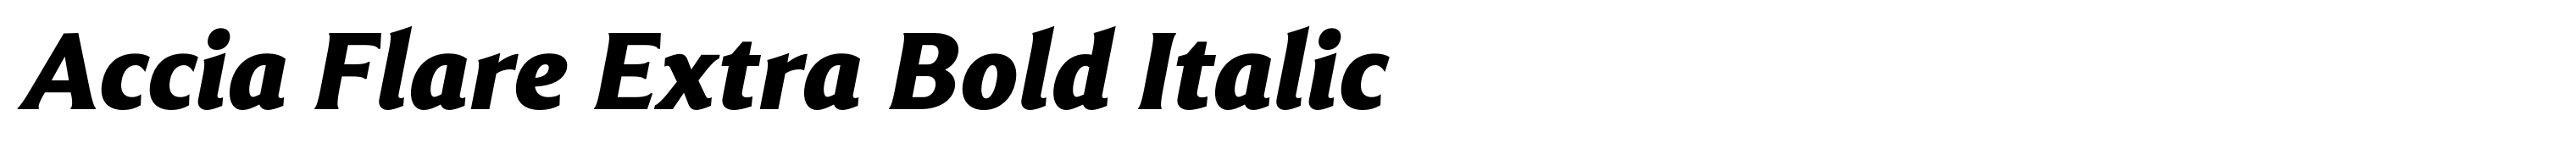 Accia Flare Extra Bold Italic